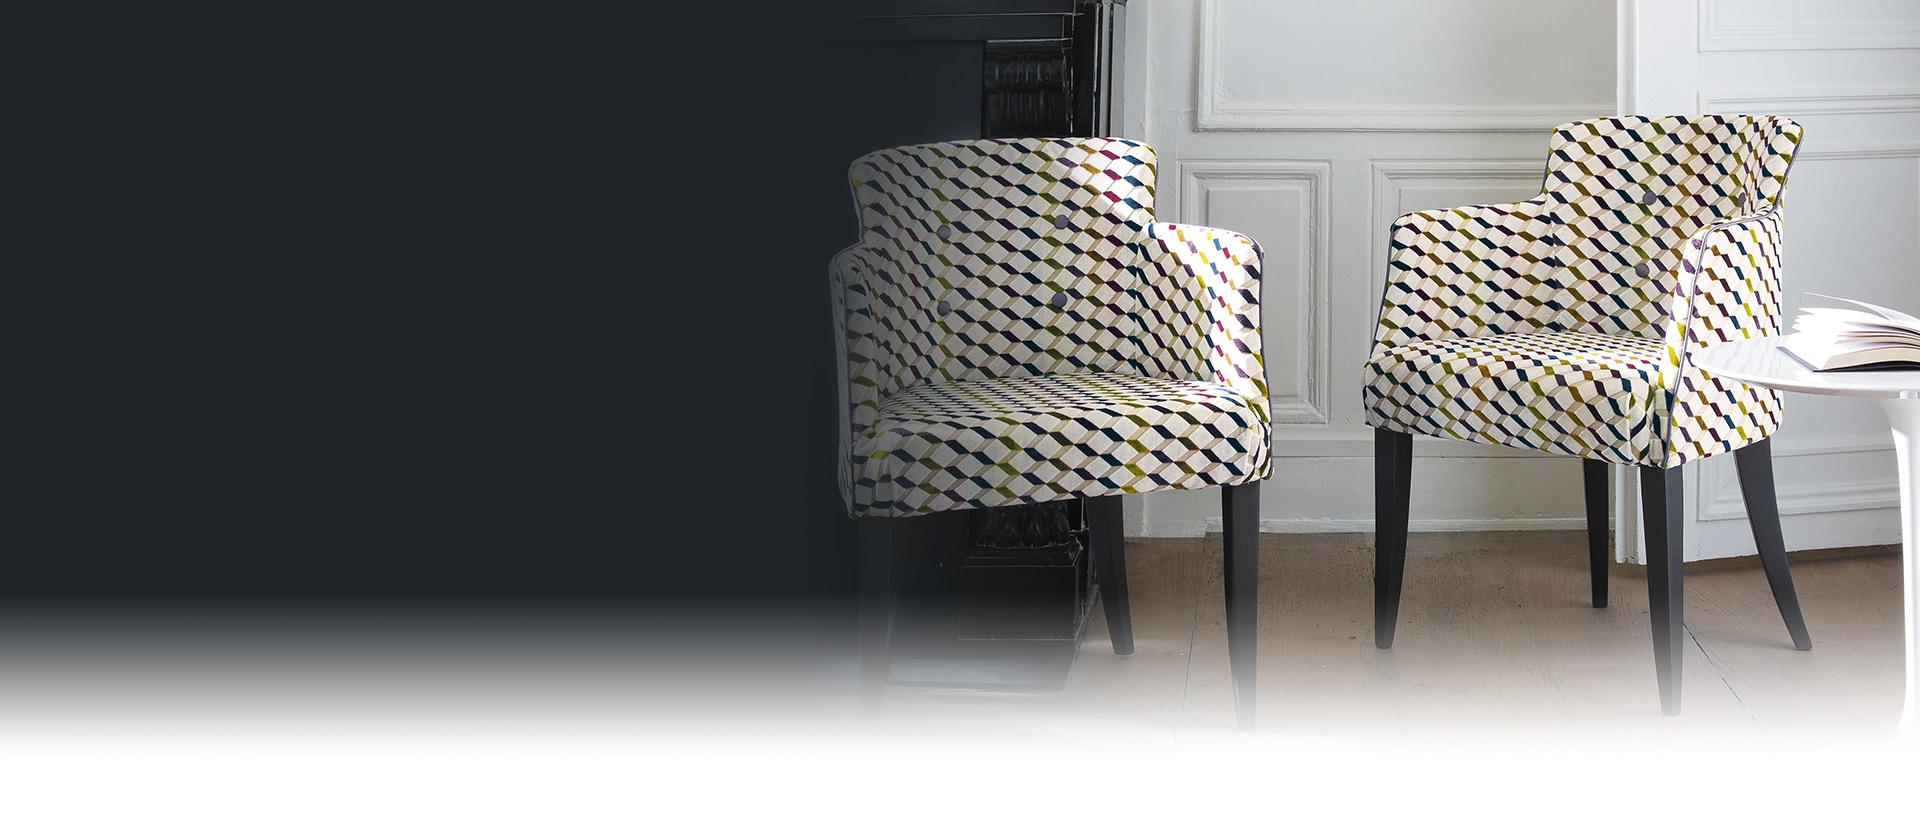 Dwa krzesła w wzorze różnokolorowych kostek stojące w białym pokoju - slajder #3